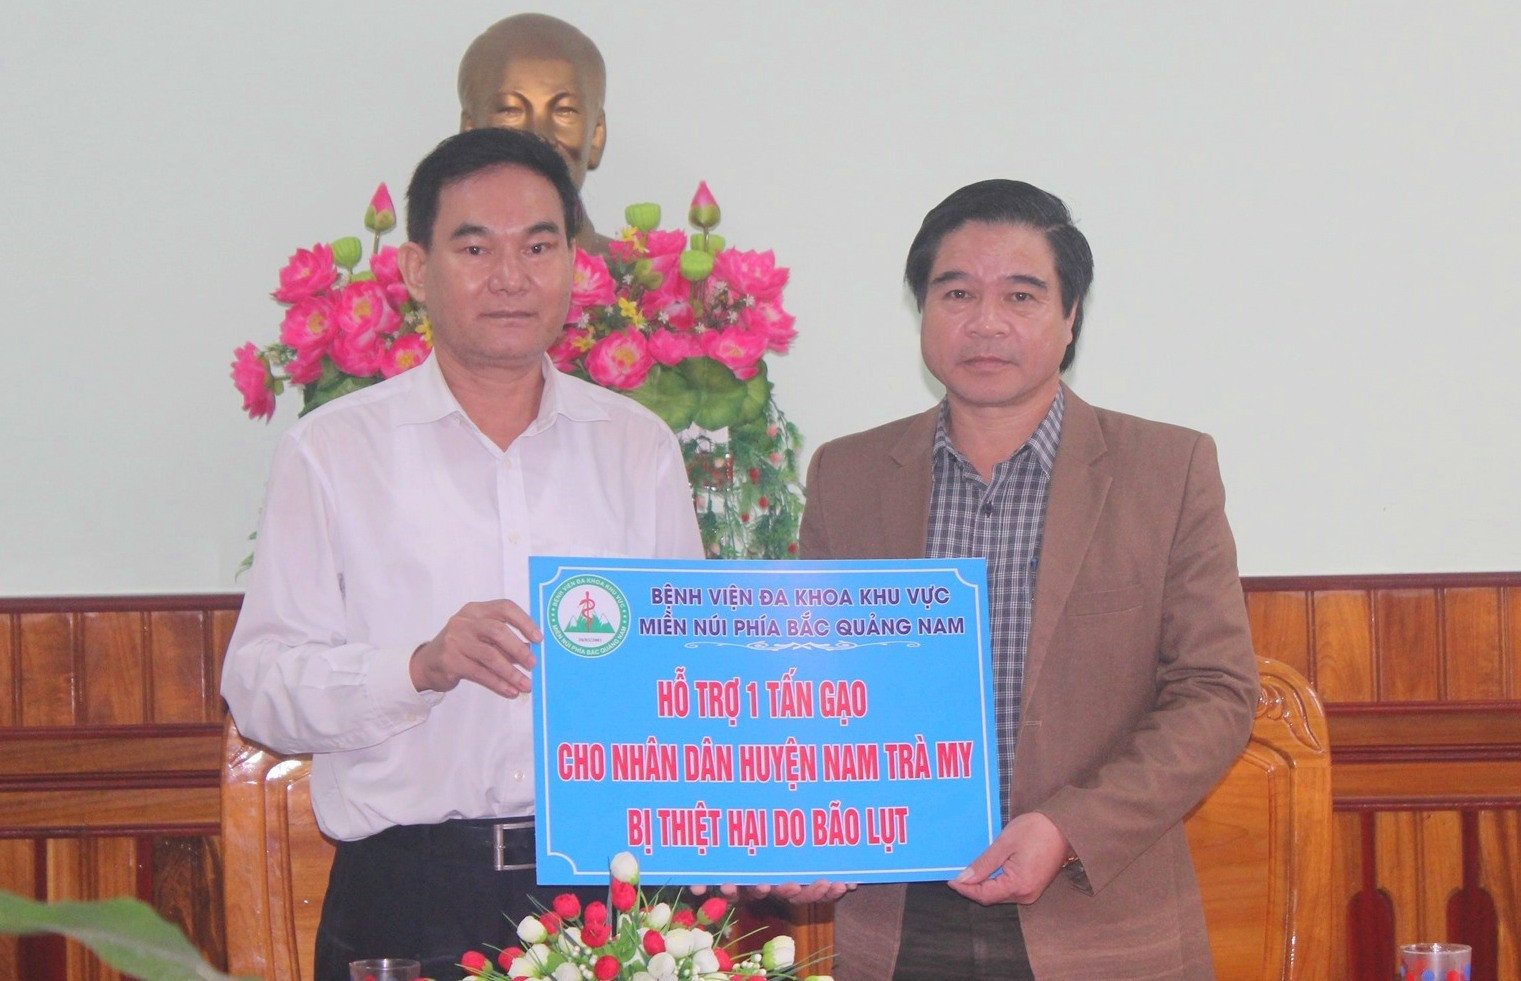 Đại diện Bệnh viện Đa khoa khu vực miền núi phía Bắc Quảng Nam hỗ trợ 1 tấn gạo đến huyện Nam Trà My. Ảnh: NHAN DUY